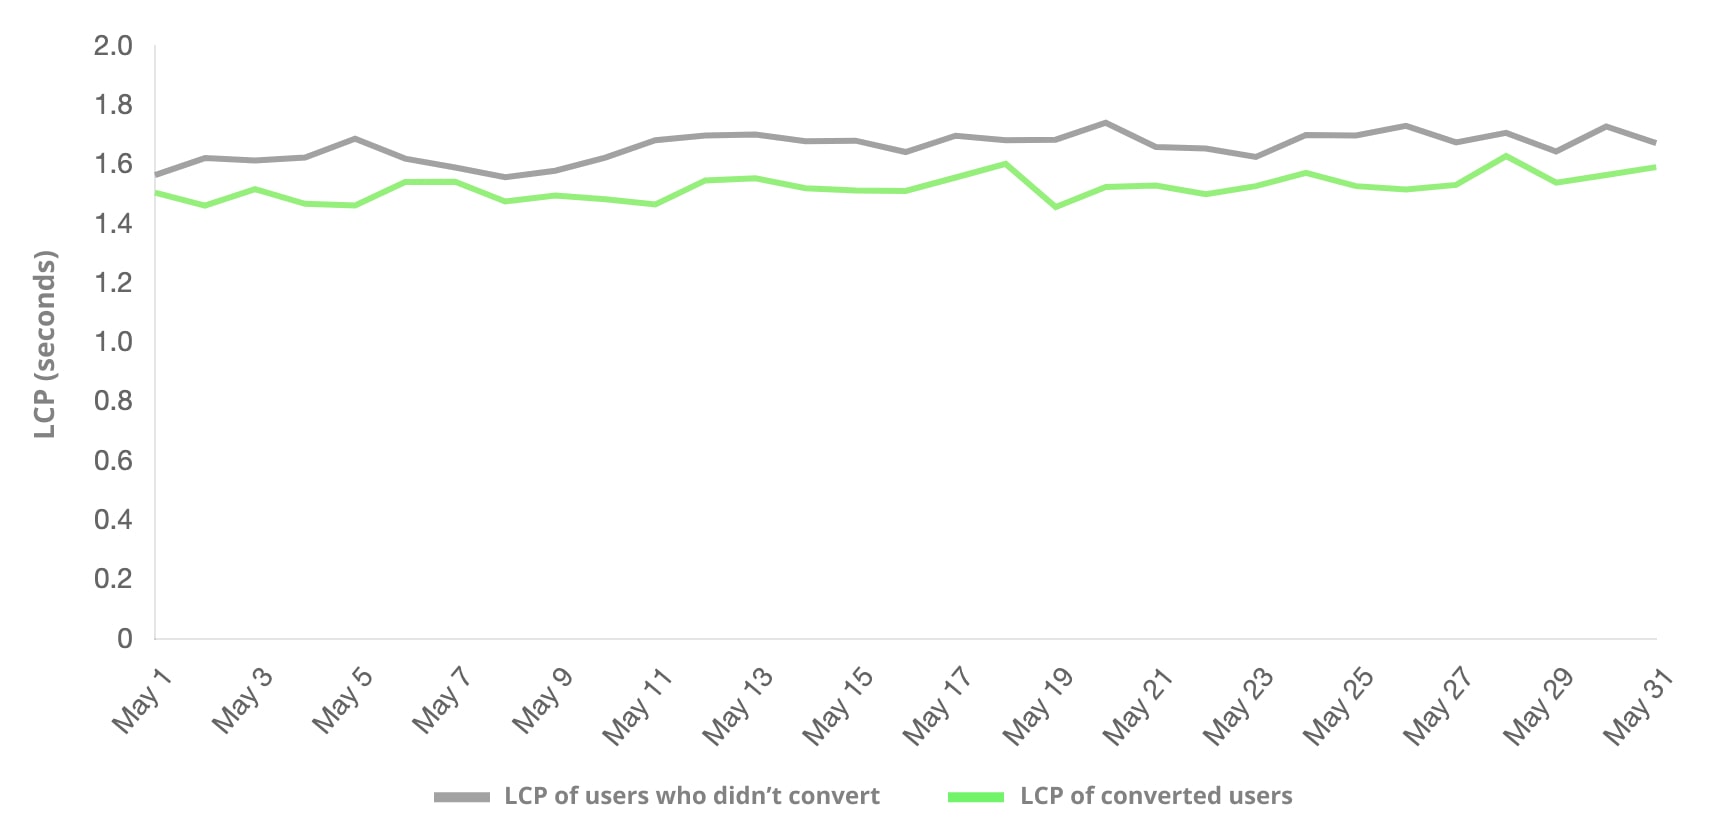 LCP&#39;ye göre dönüşüm gerçekleştiren kullanıcılarla gerçekleştirmeyenlerin karşılaştırılması. Daha sık dönüşüm gerçekleştiren kullanıcı grubu, daha düşük bir LCP ile karşılaştı.